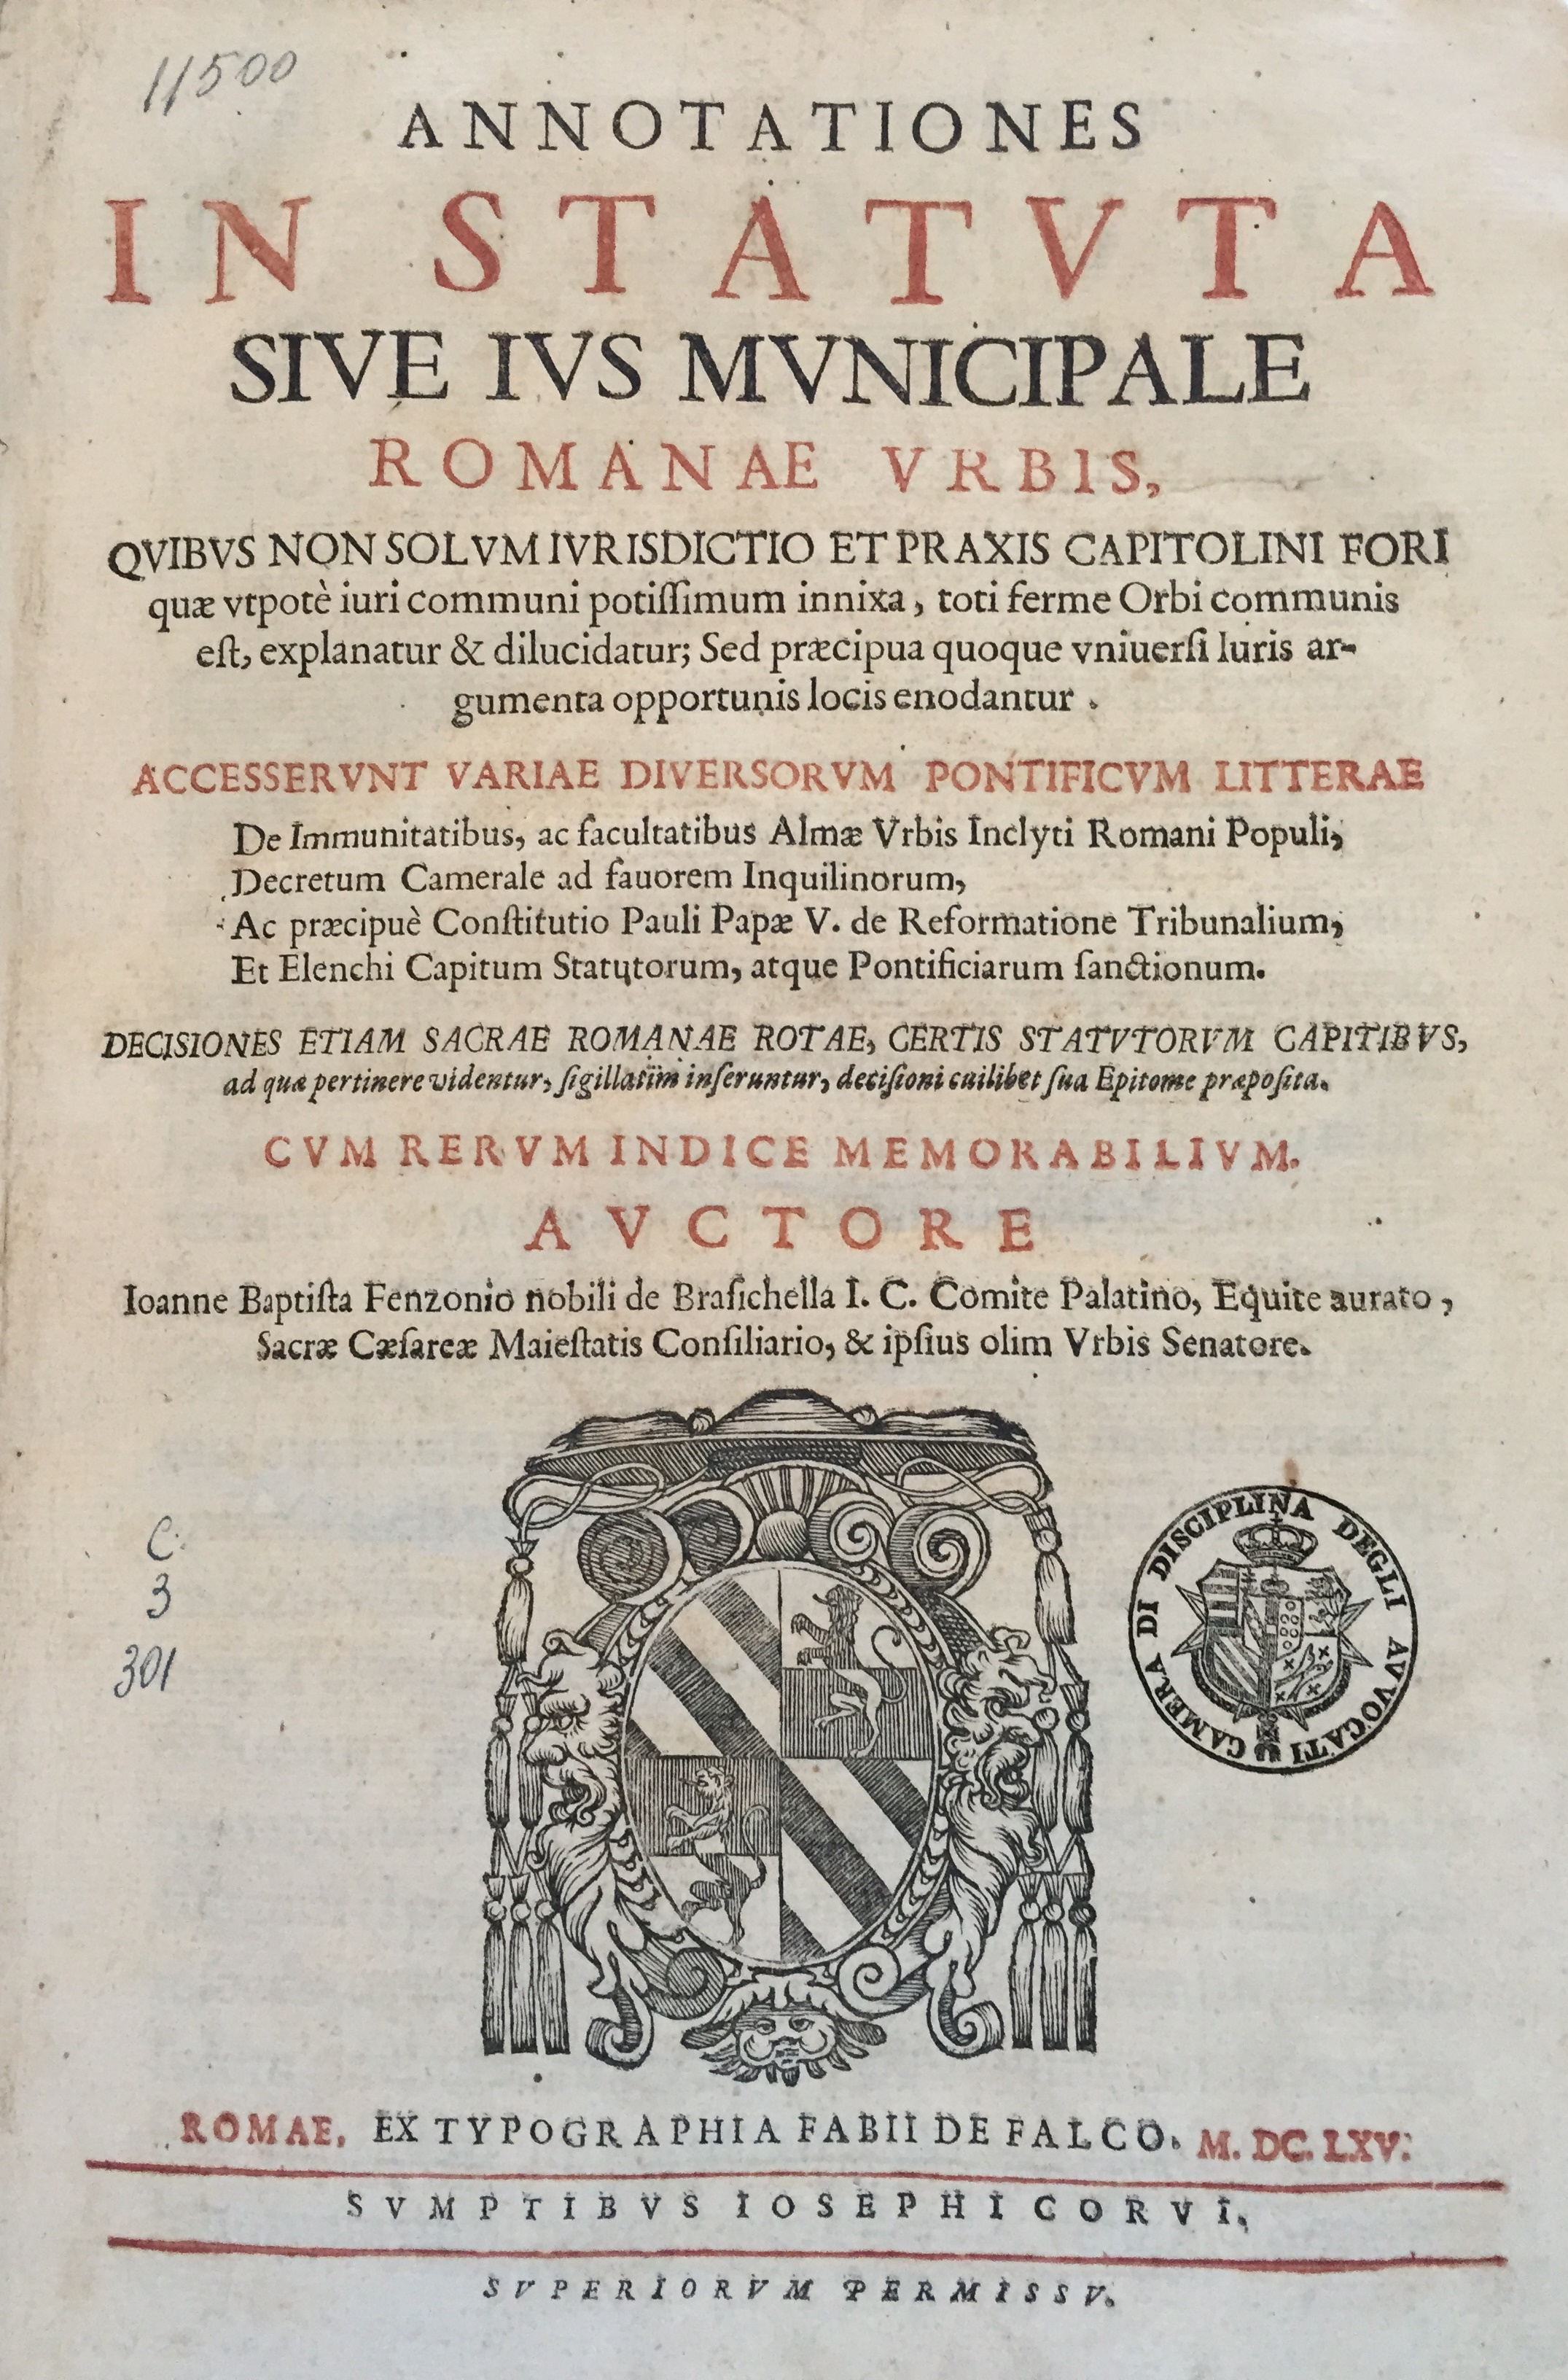 Annotationes in statuta sive ius municipale Romanae urbis